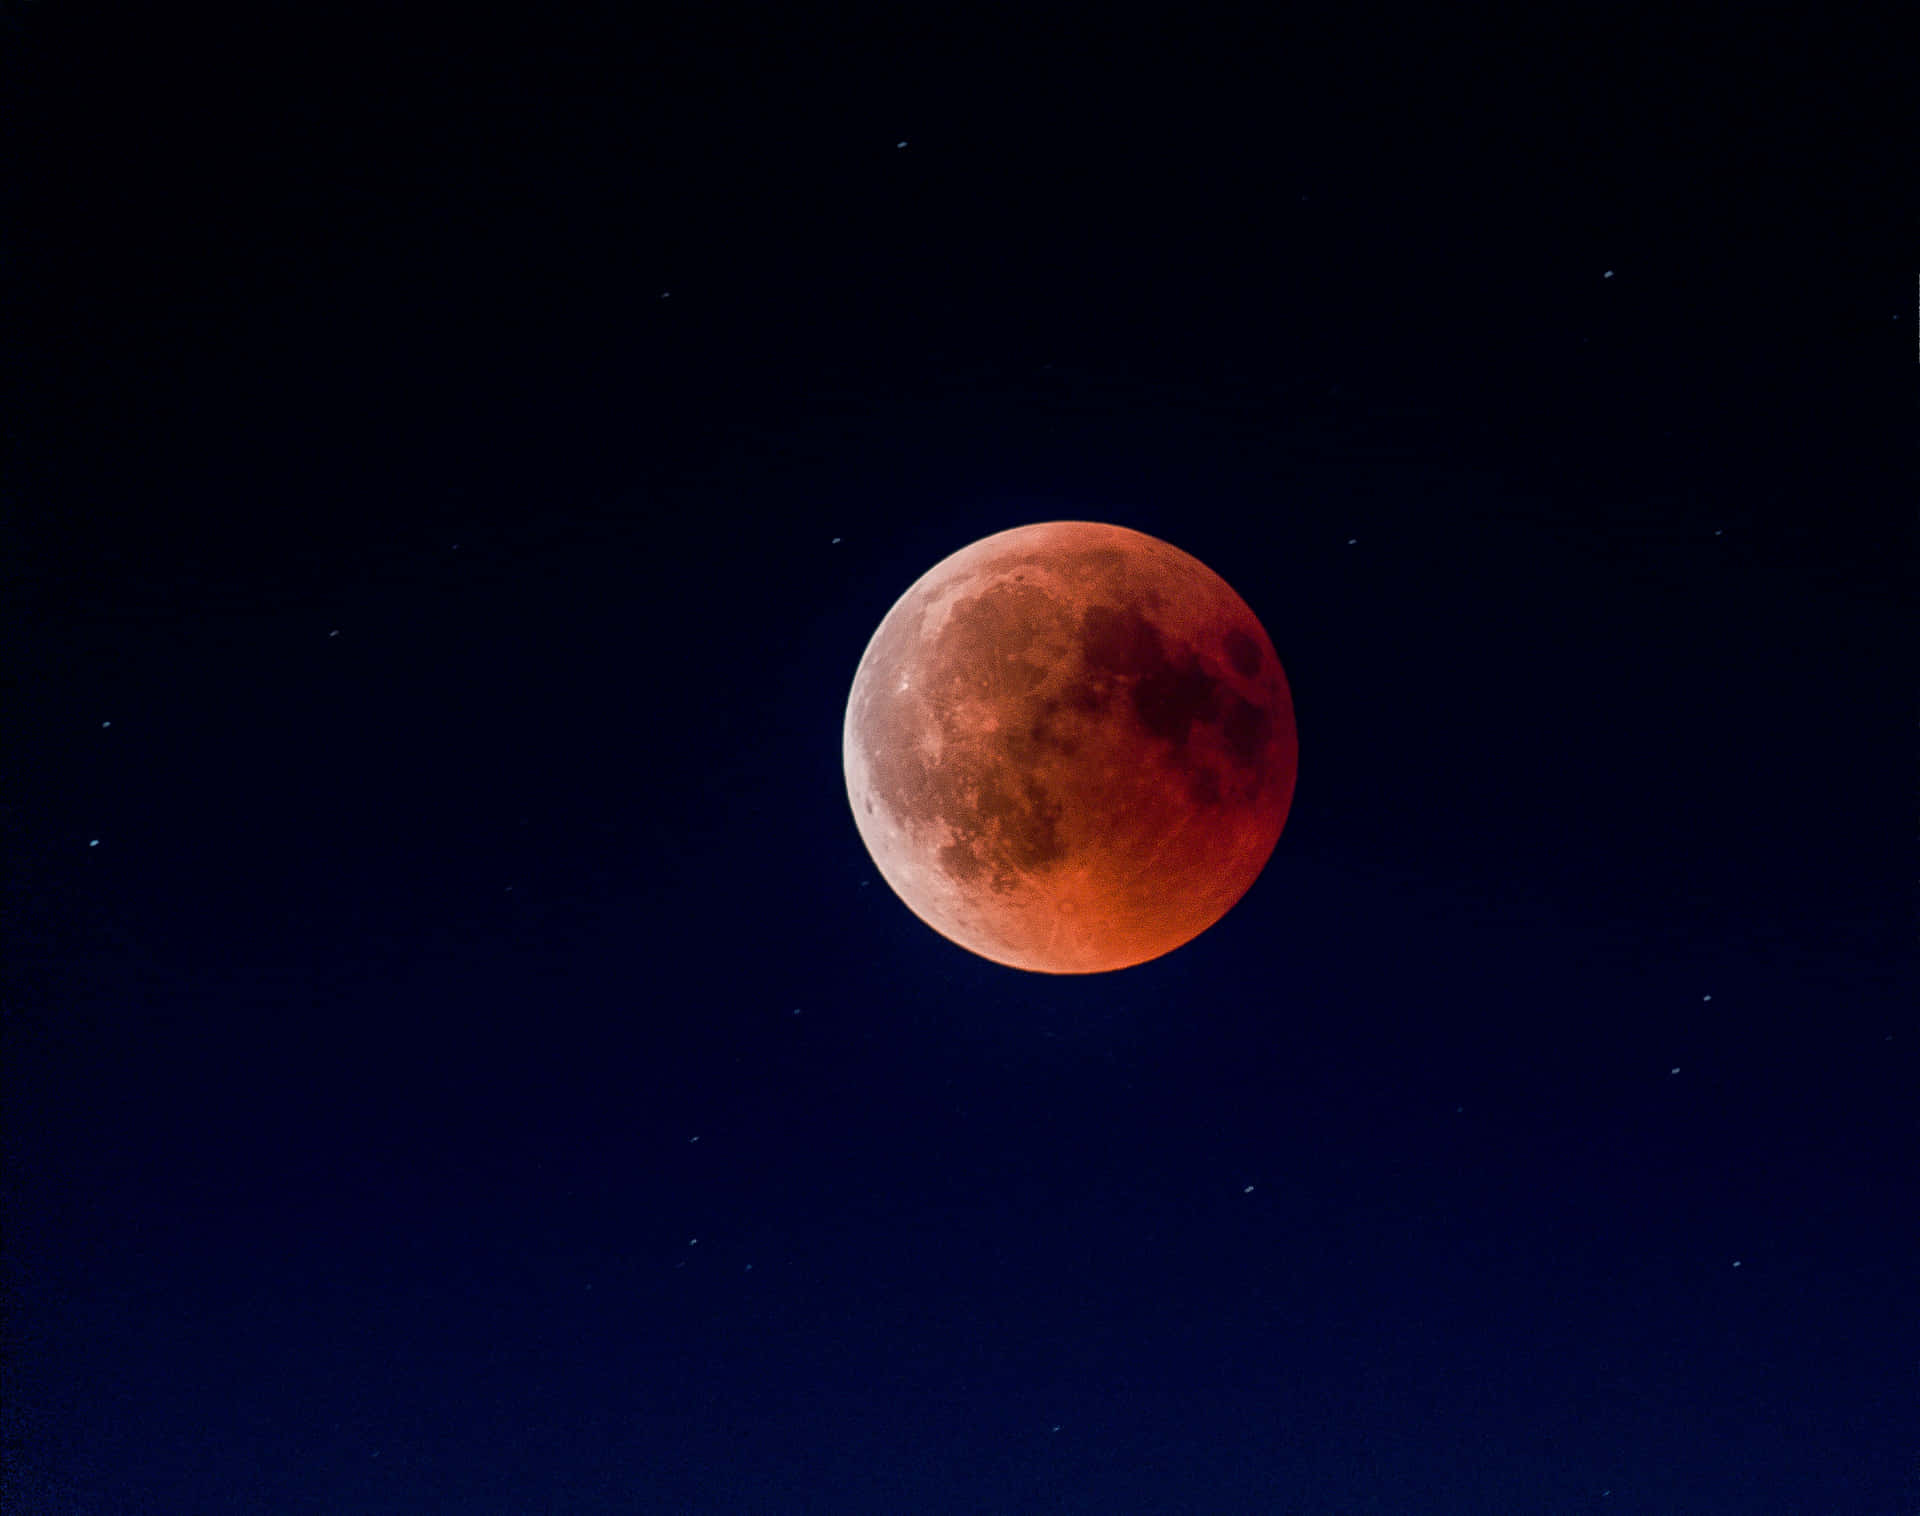 Lunar Eclipse Red Moon Wallpaper